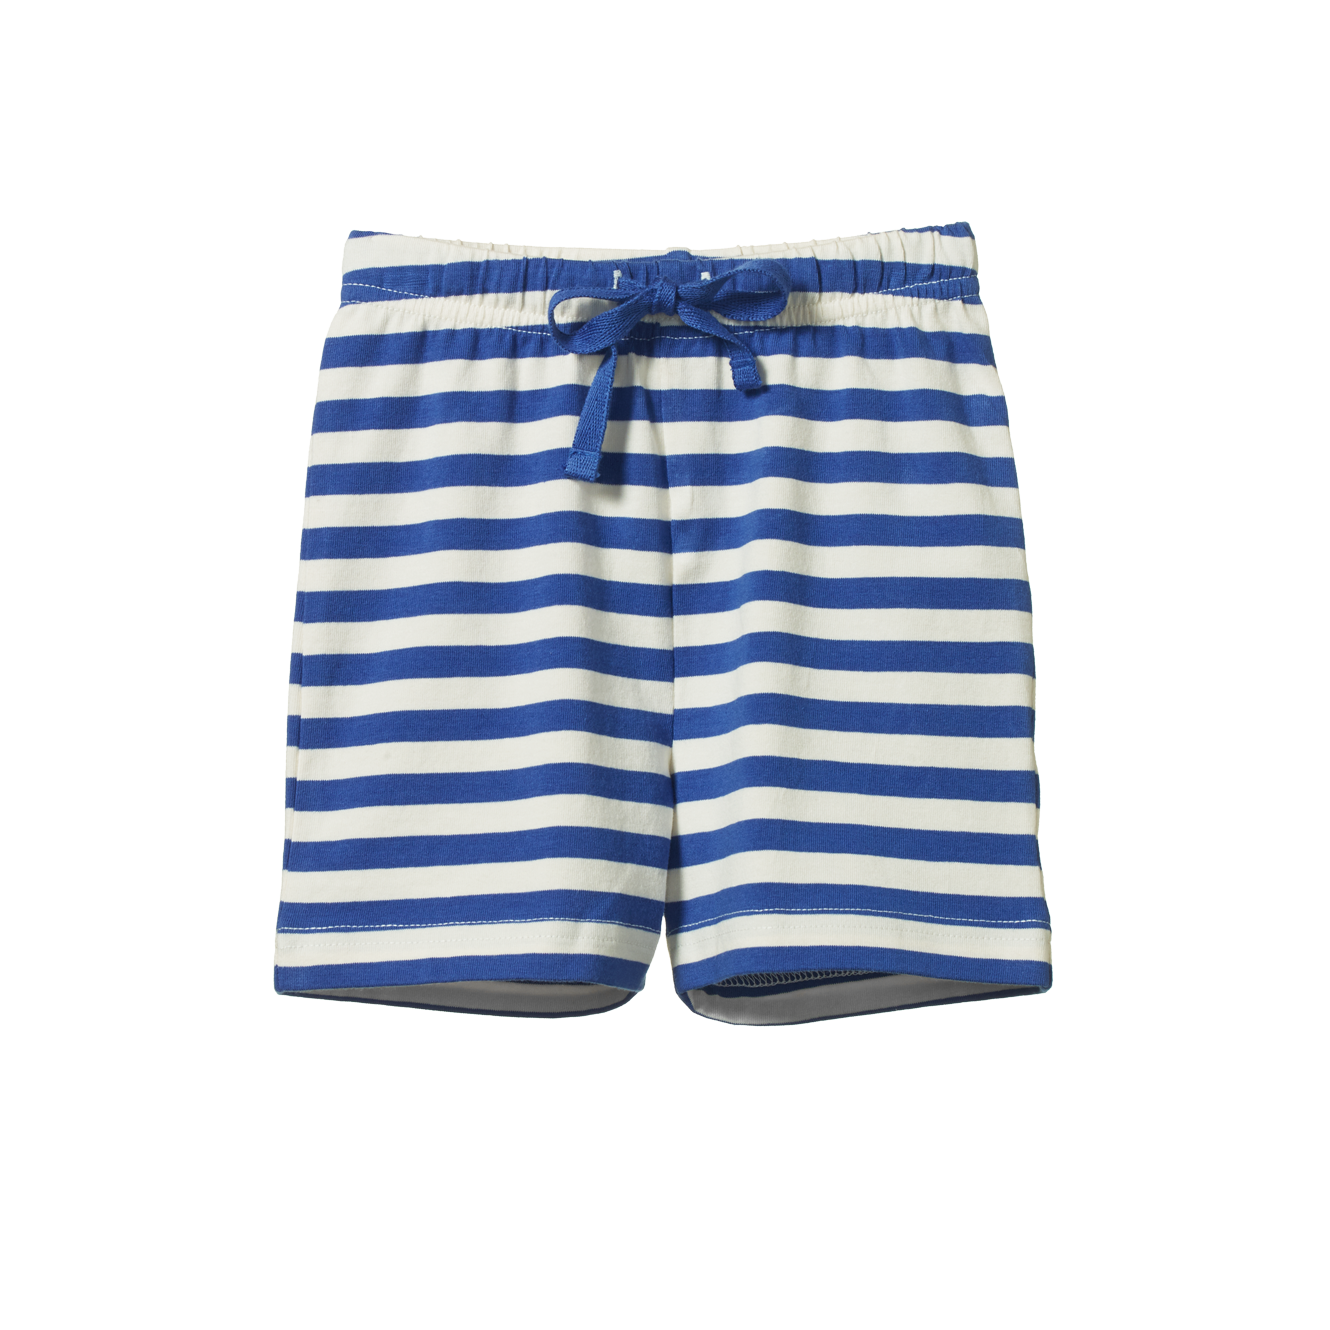 Jimmy Shorts - Blue sea stripe - Little Hero Kids